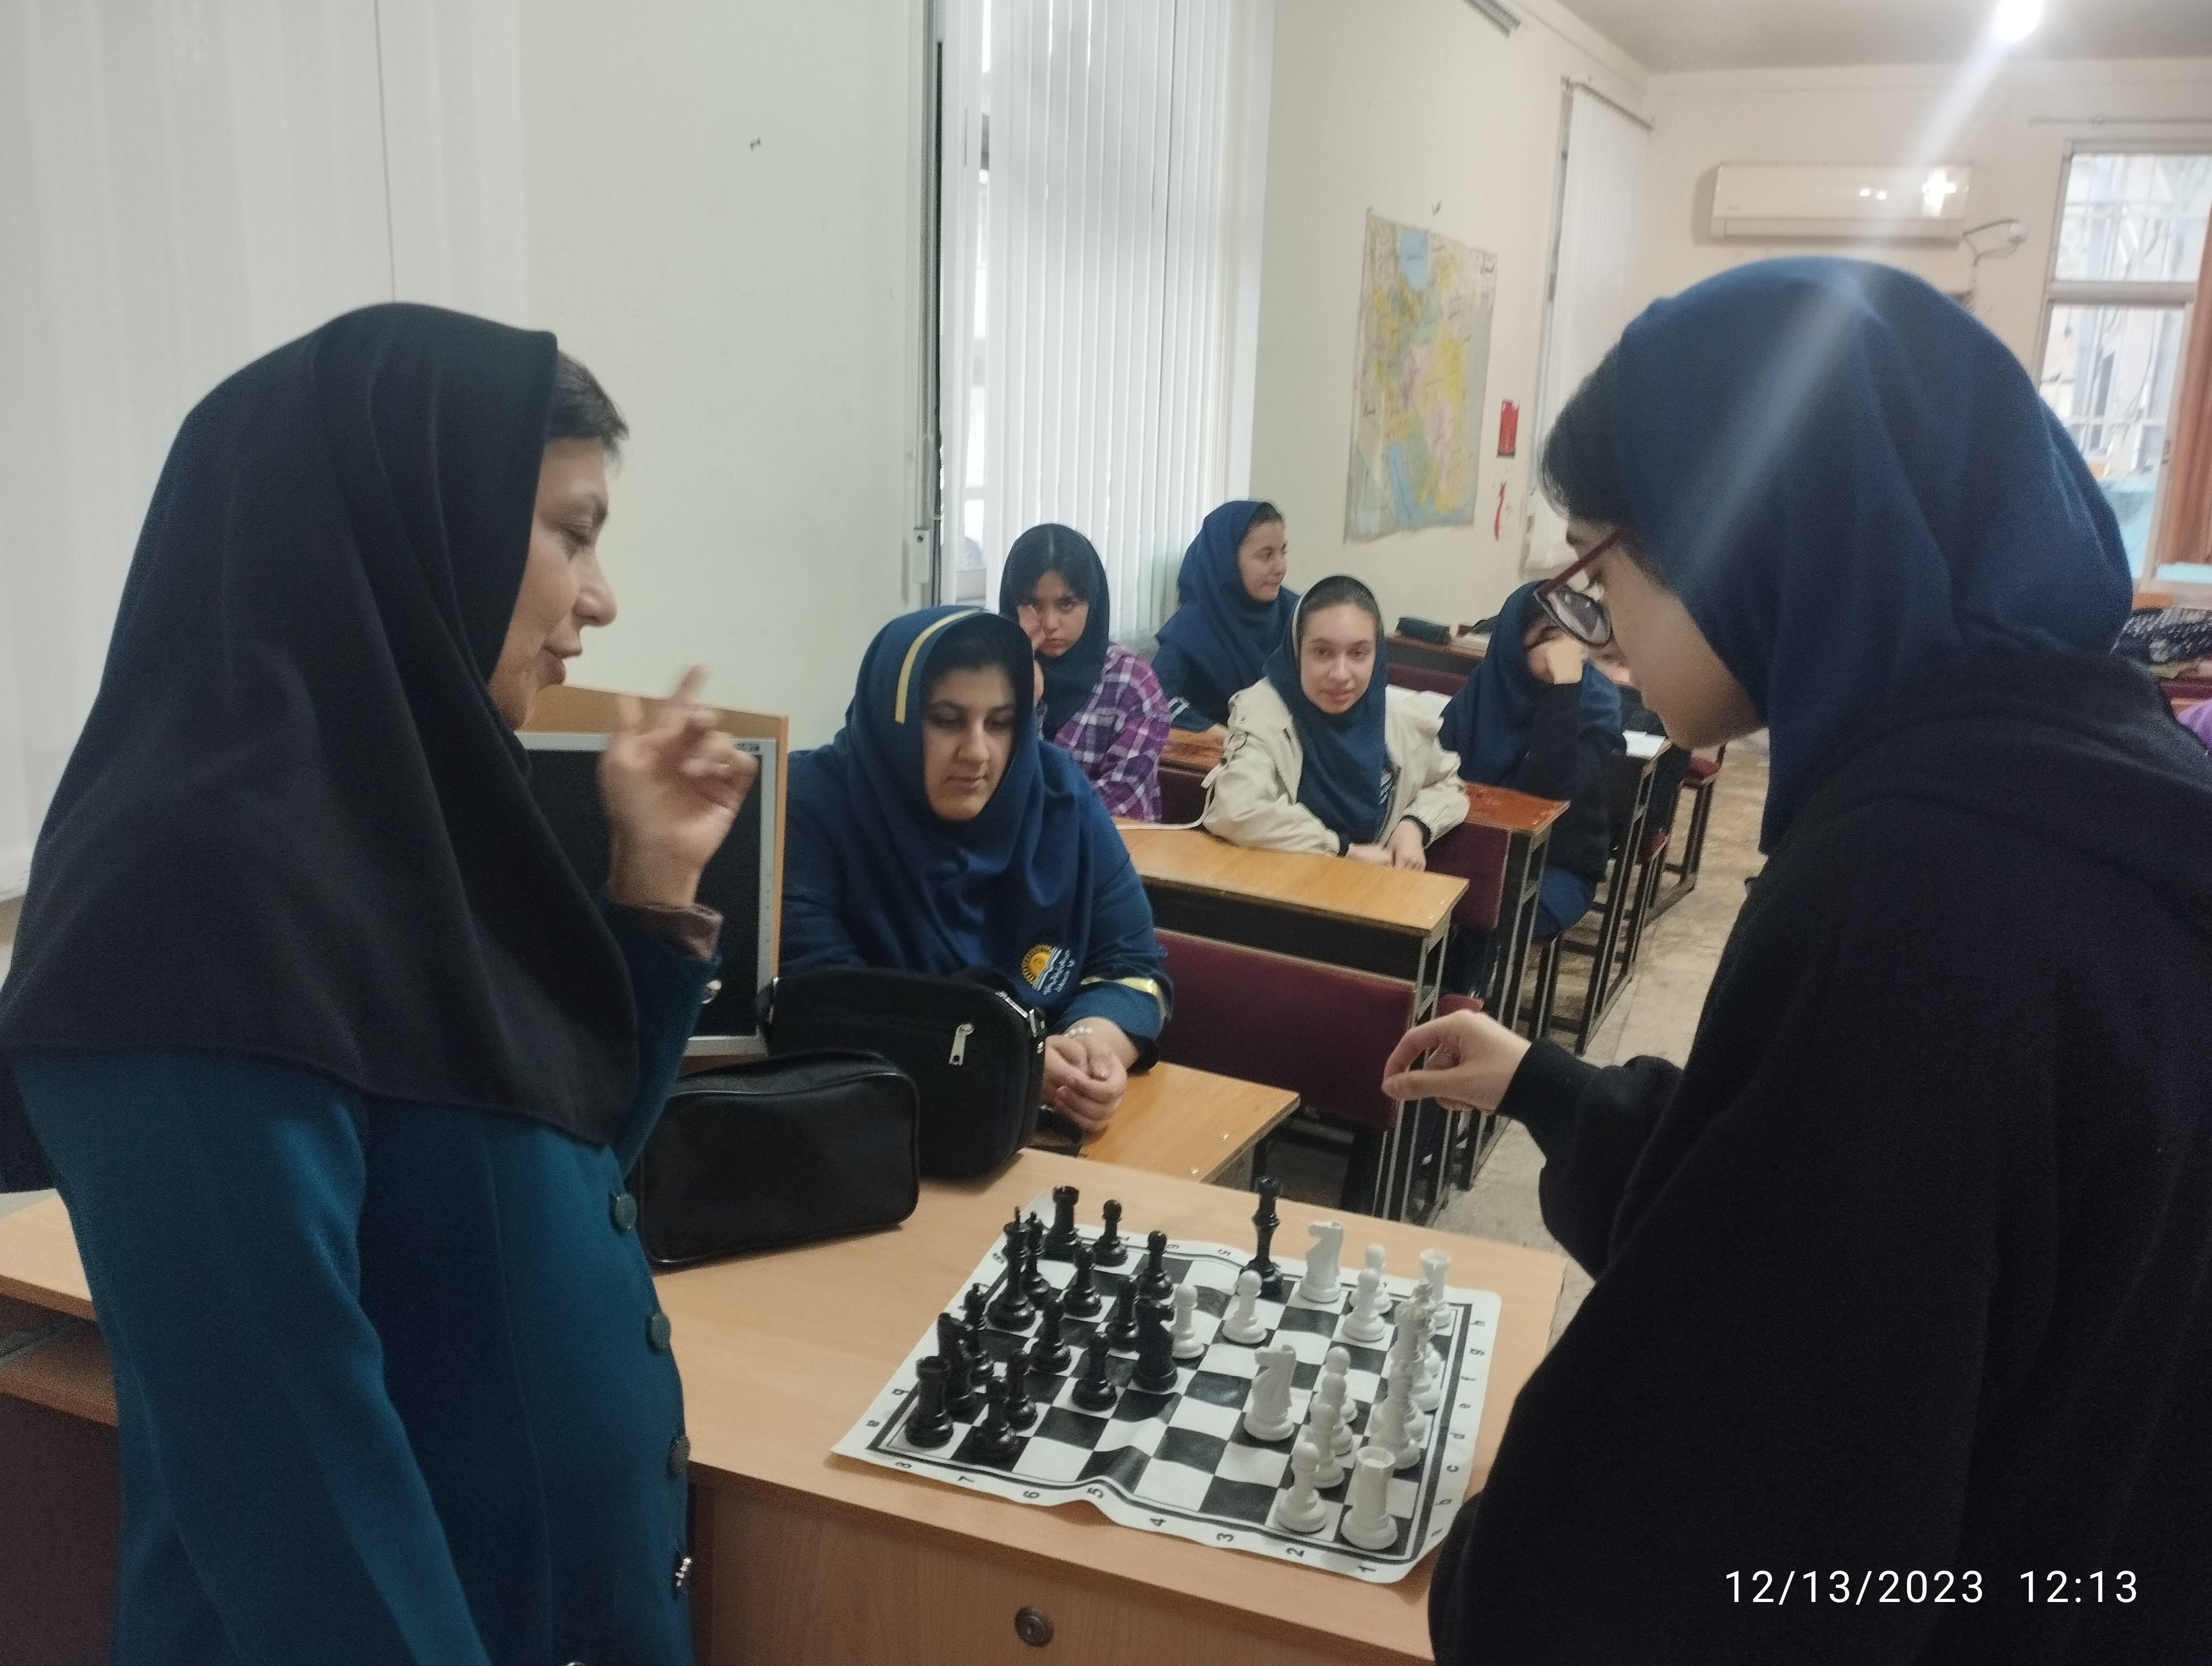 برگزاری کلاس شطرنج در آوا